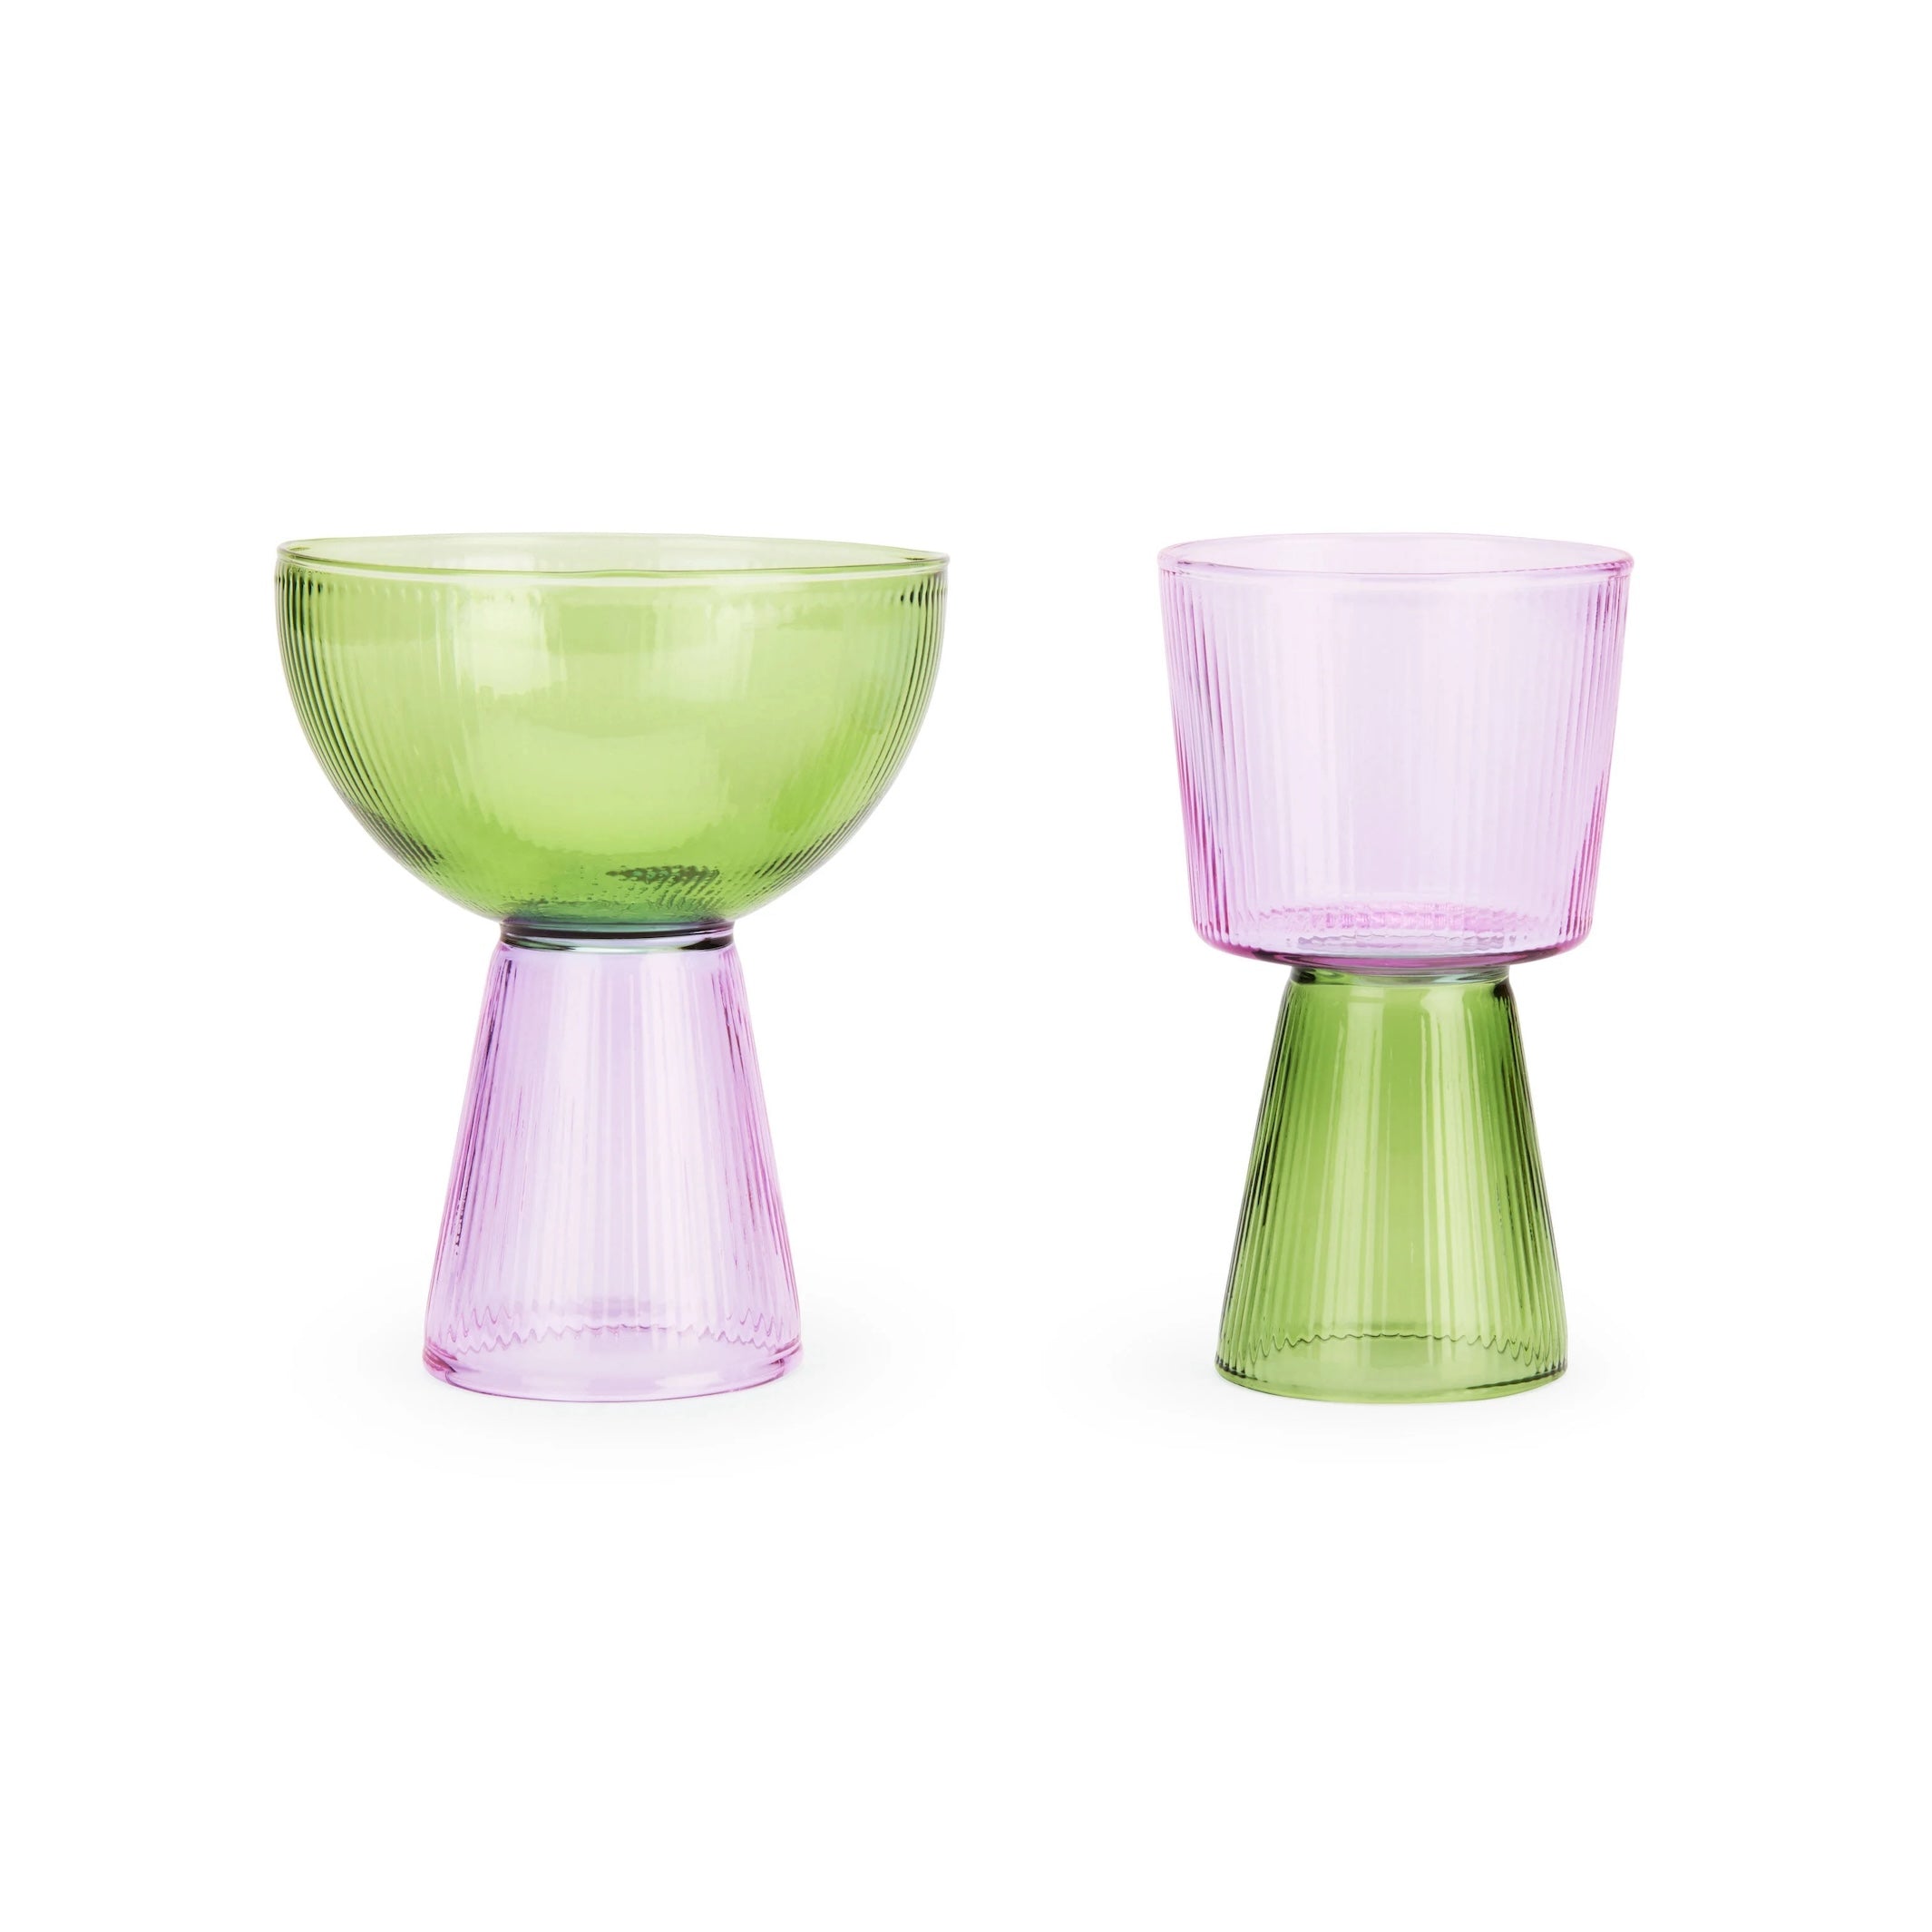 Yinka Ilori Oorun Didun Glass Cups - Set of 2 - Green/Purple